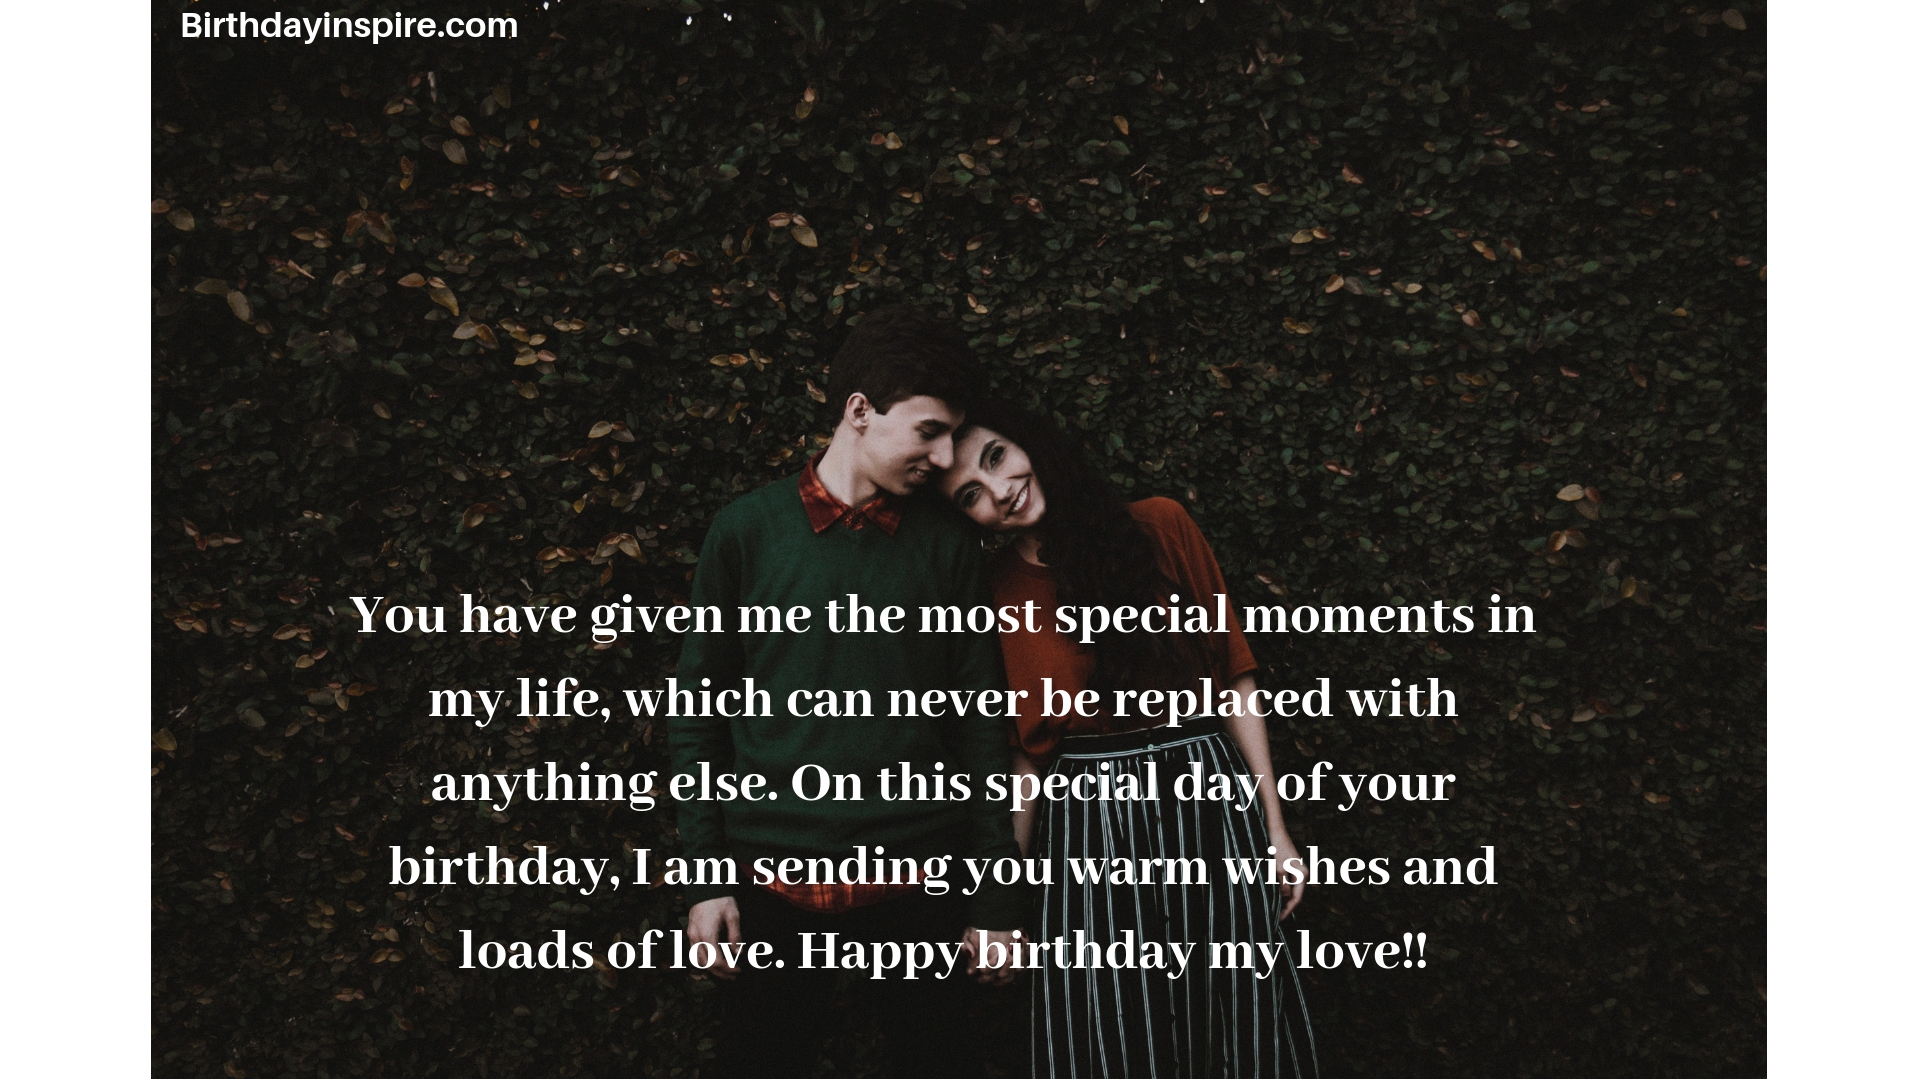 Heart winning birthday wishes for boyfriend